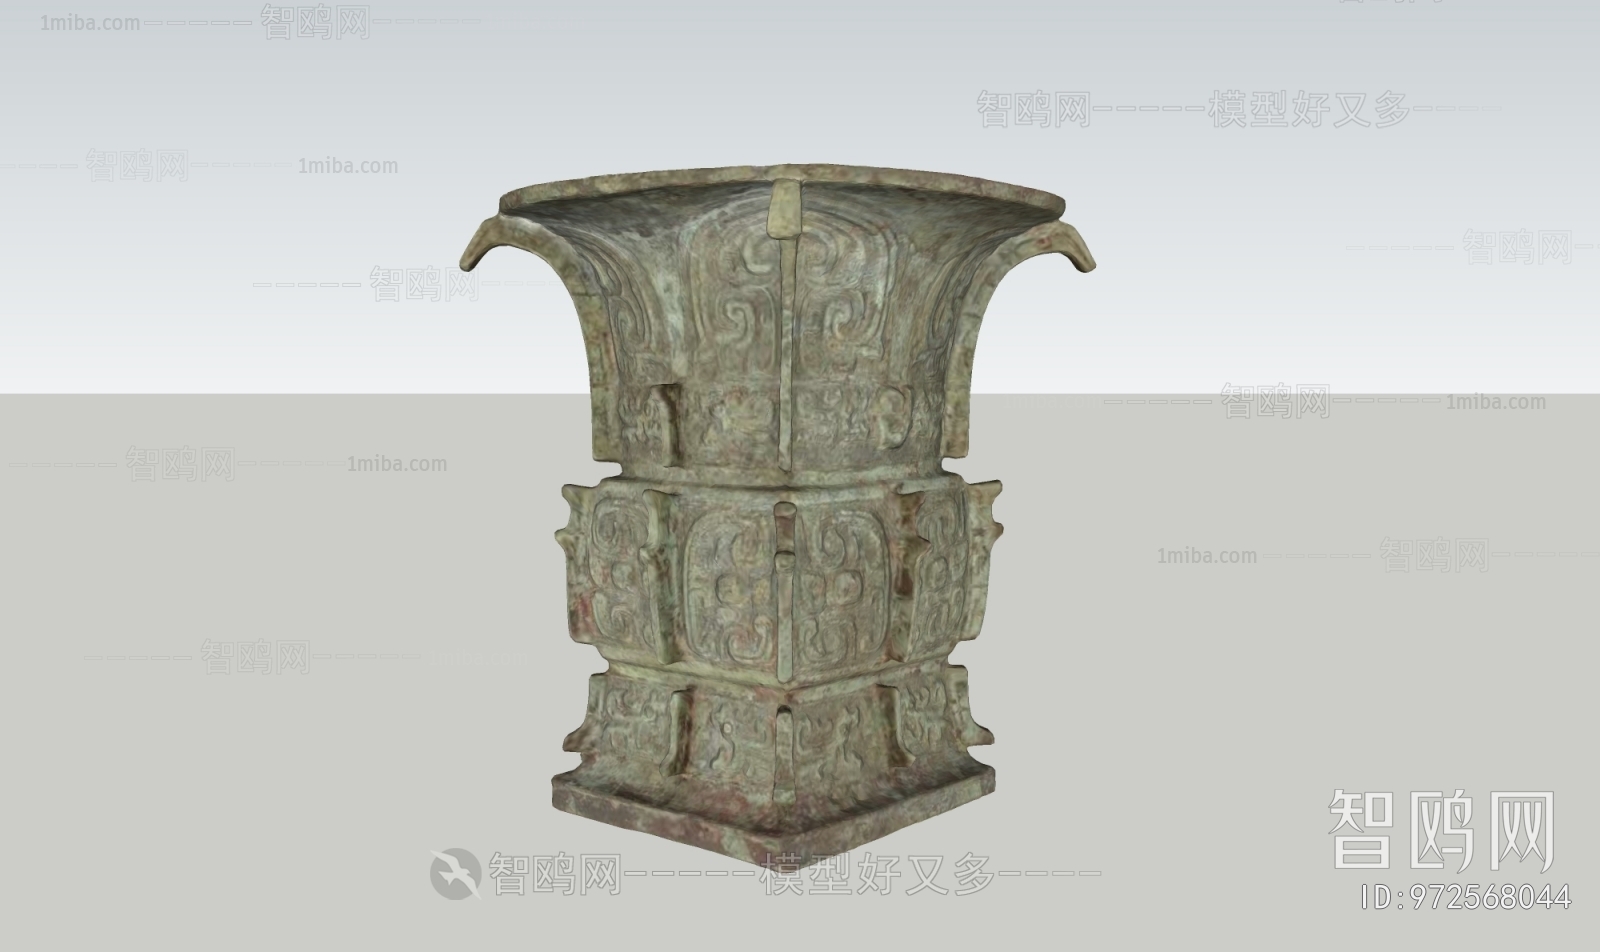 中式铜铸艺术摆件